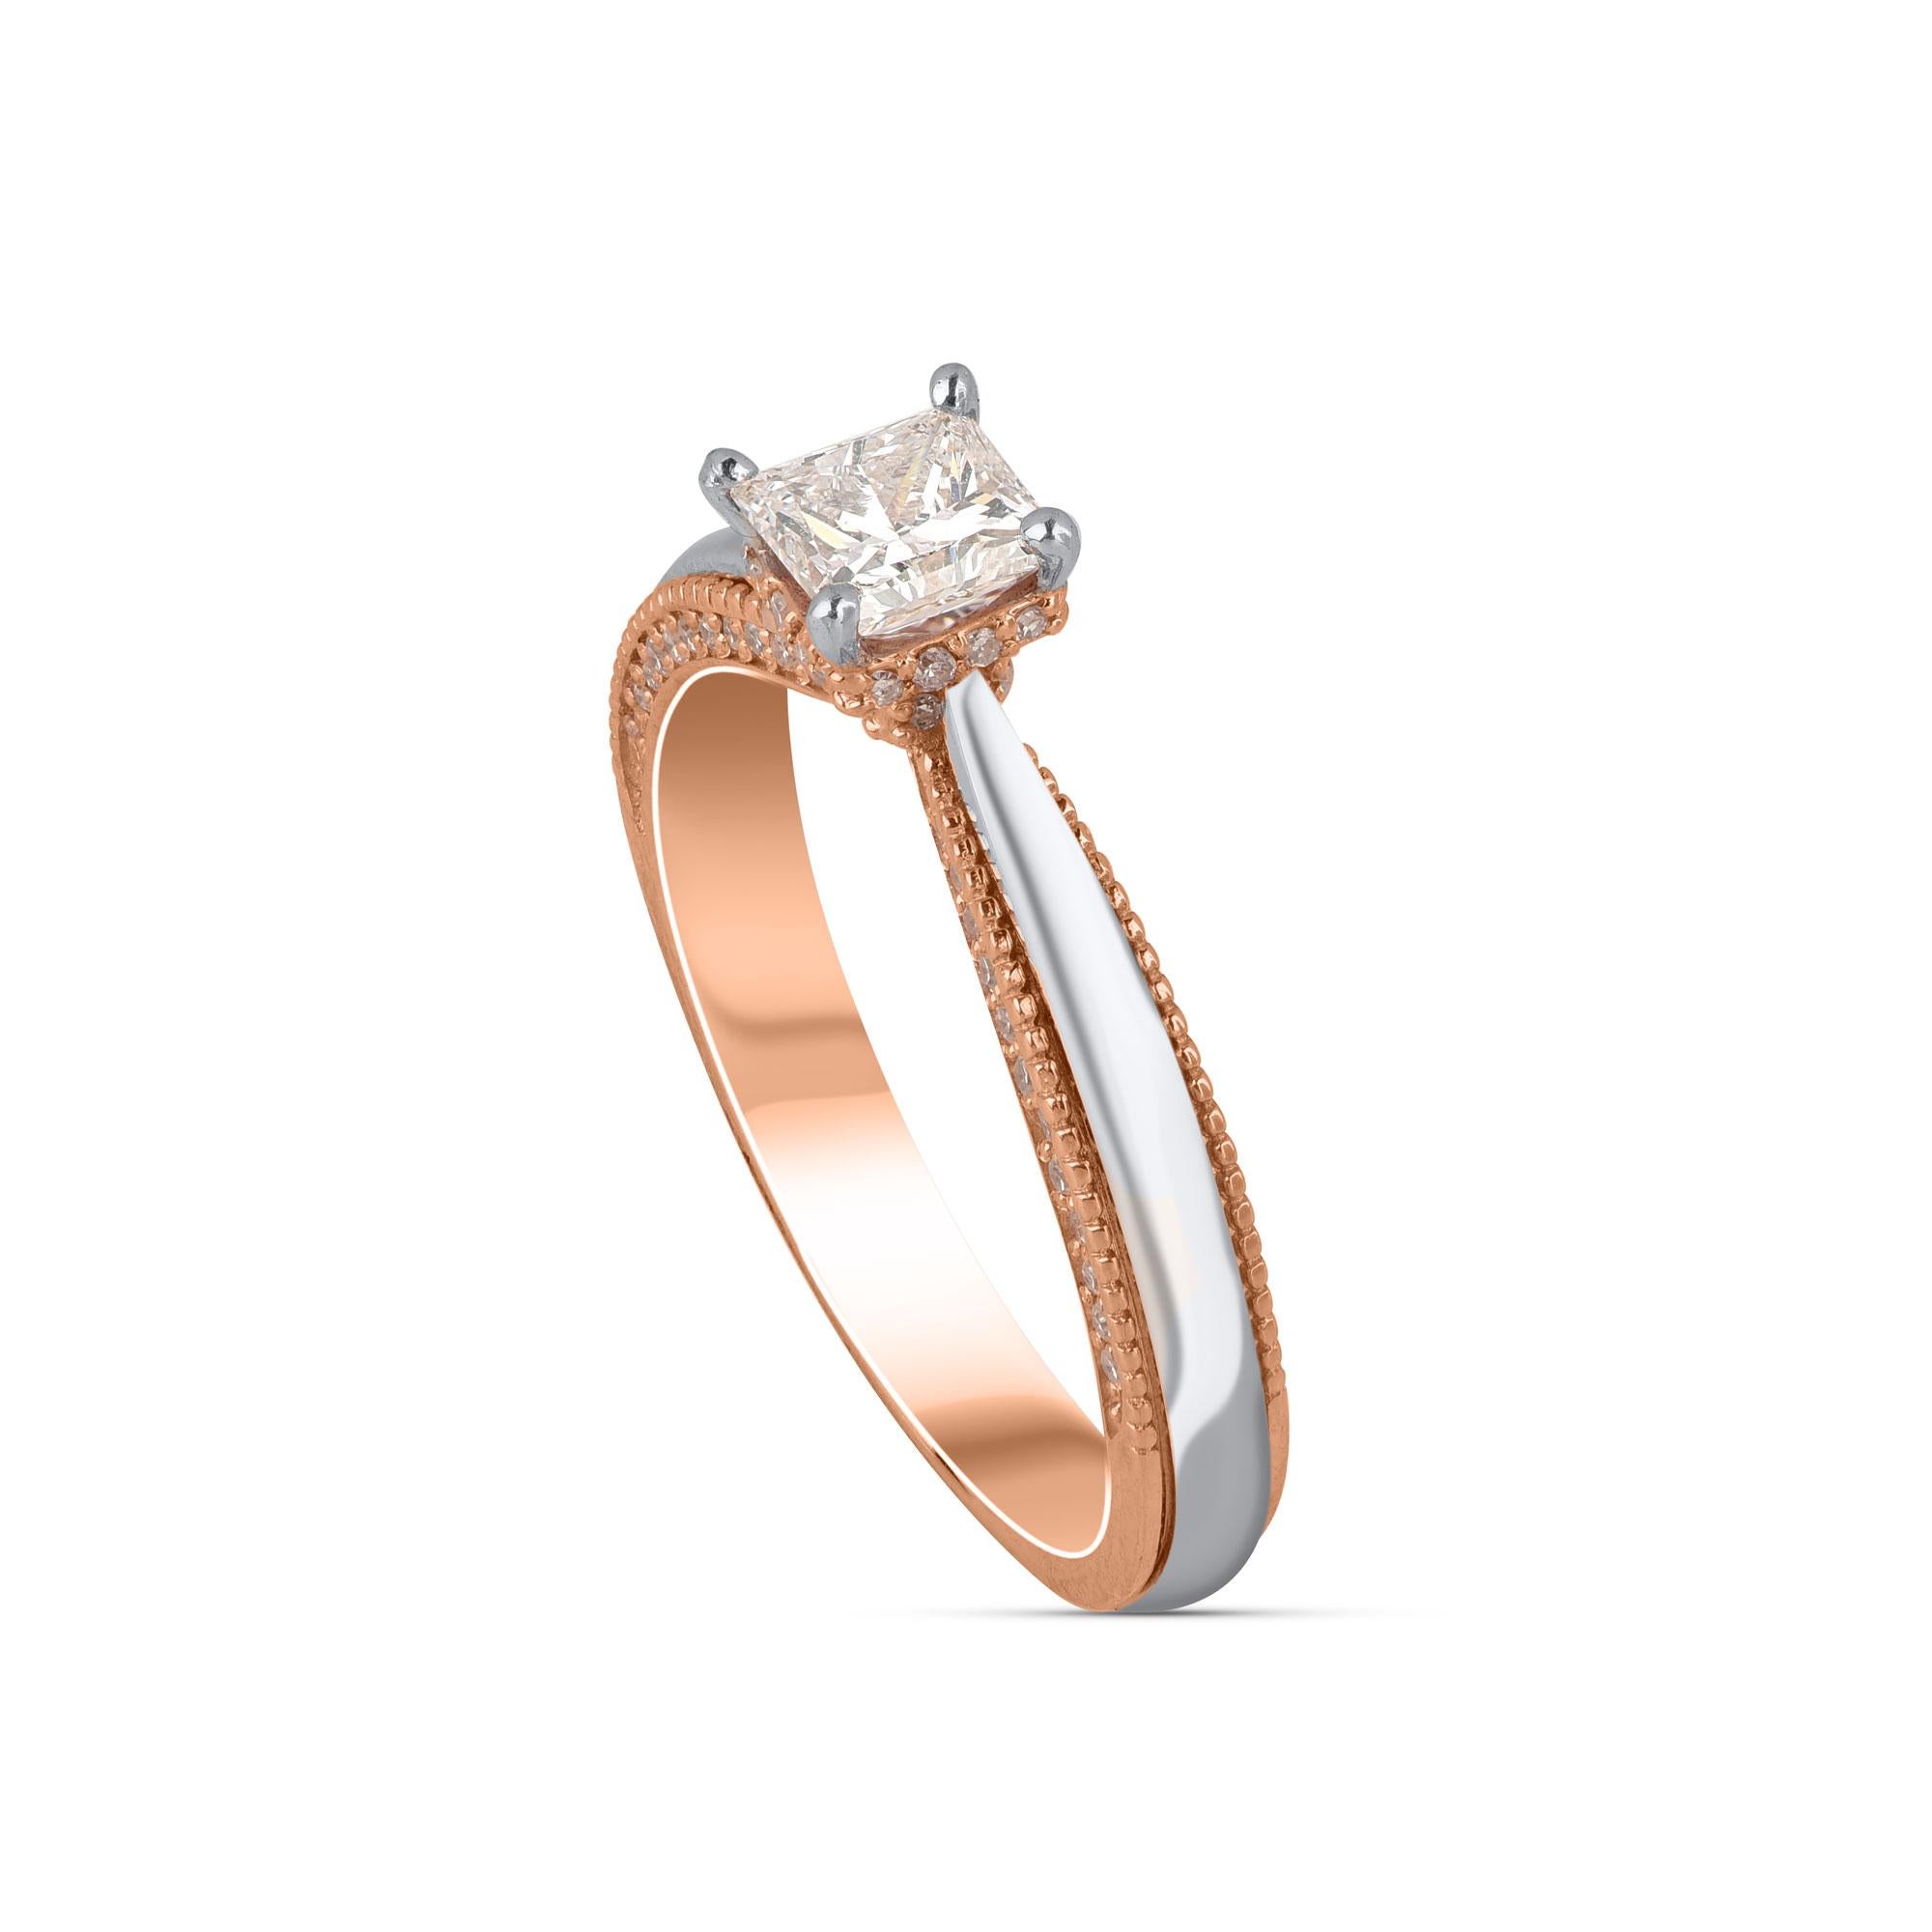 Cette bague de fiançailles en diamant est ornée d'un diamant taille princesse et de 76 diamants taille brillant sertis à la griffe. Elle est réalisée en or bicolore 18 carats. Les diamants sont classés HI/I1.  

La couleur du métal et la taille de